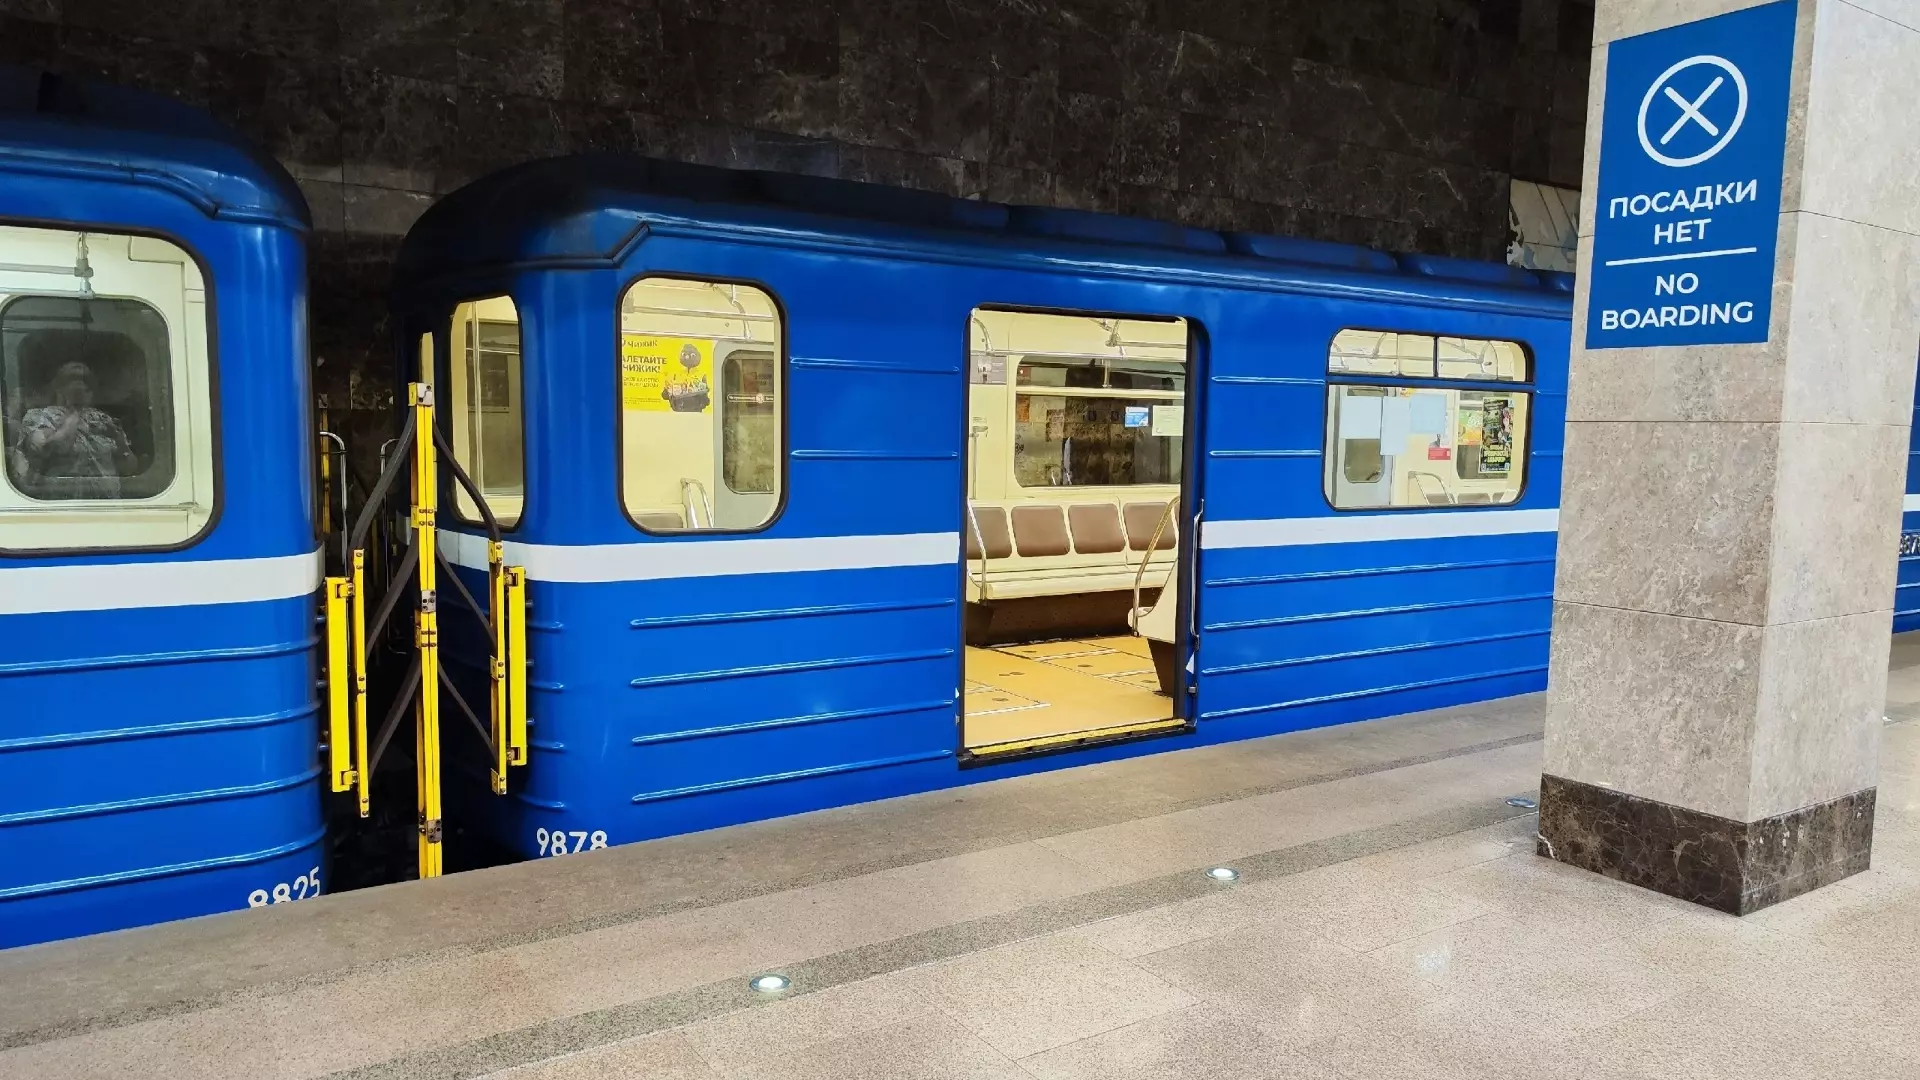 Новые автоматы для оплаты проезда появились в нижегородском метро